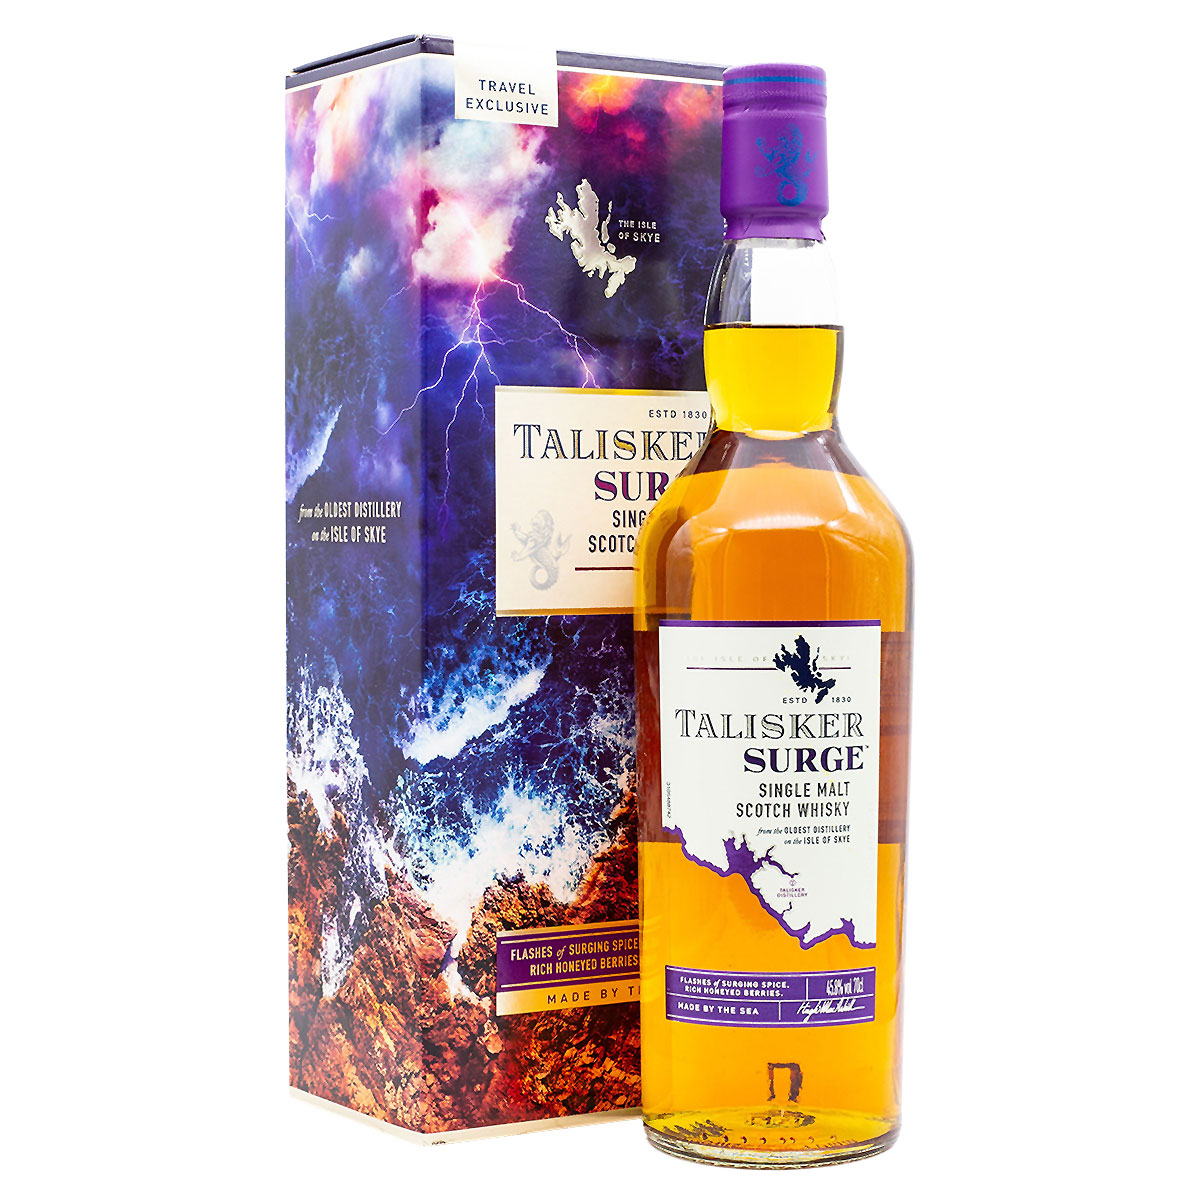 Talisker Surge: Travel Exclusive Whisky von der Isle of Skye